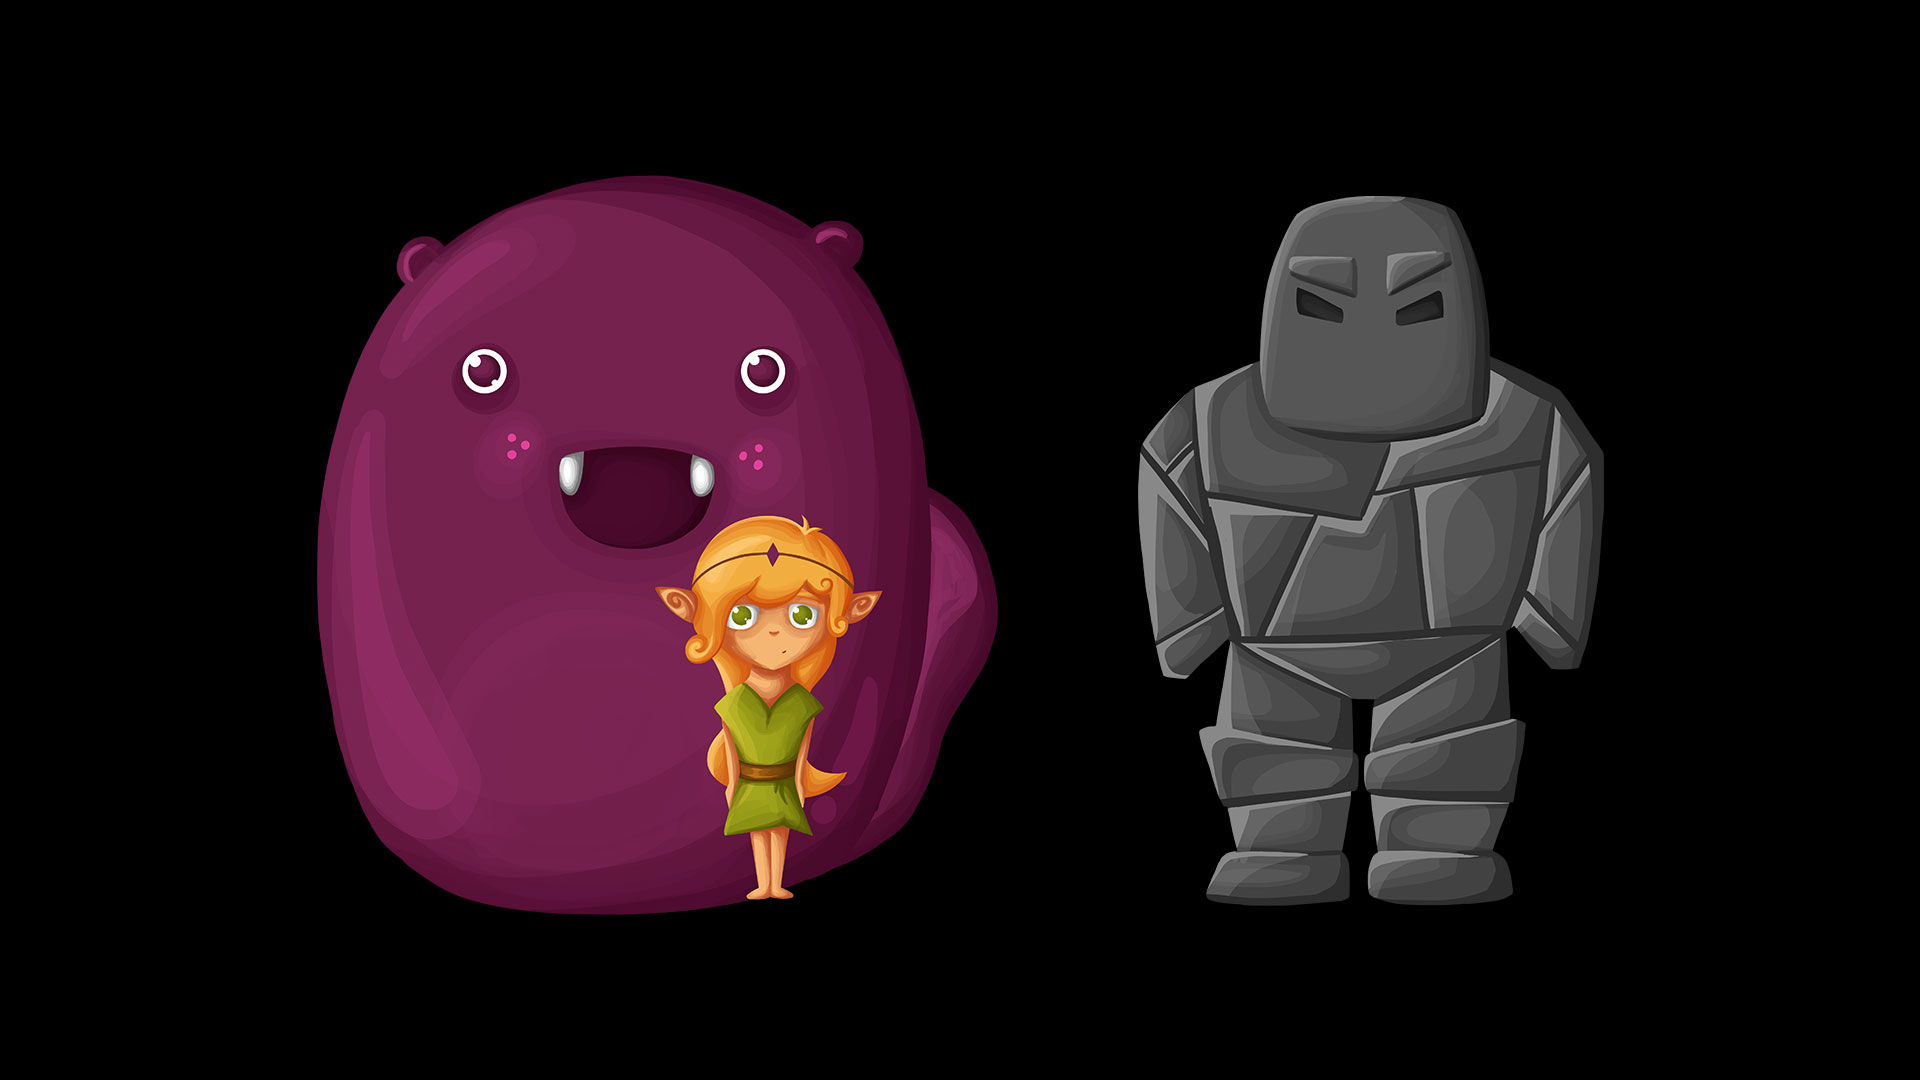 illustrierte Charaktere aus der App "Tiny Steps"